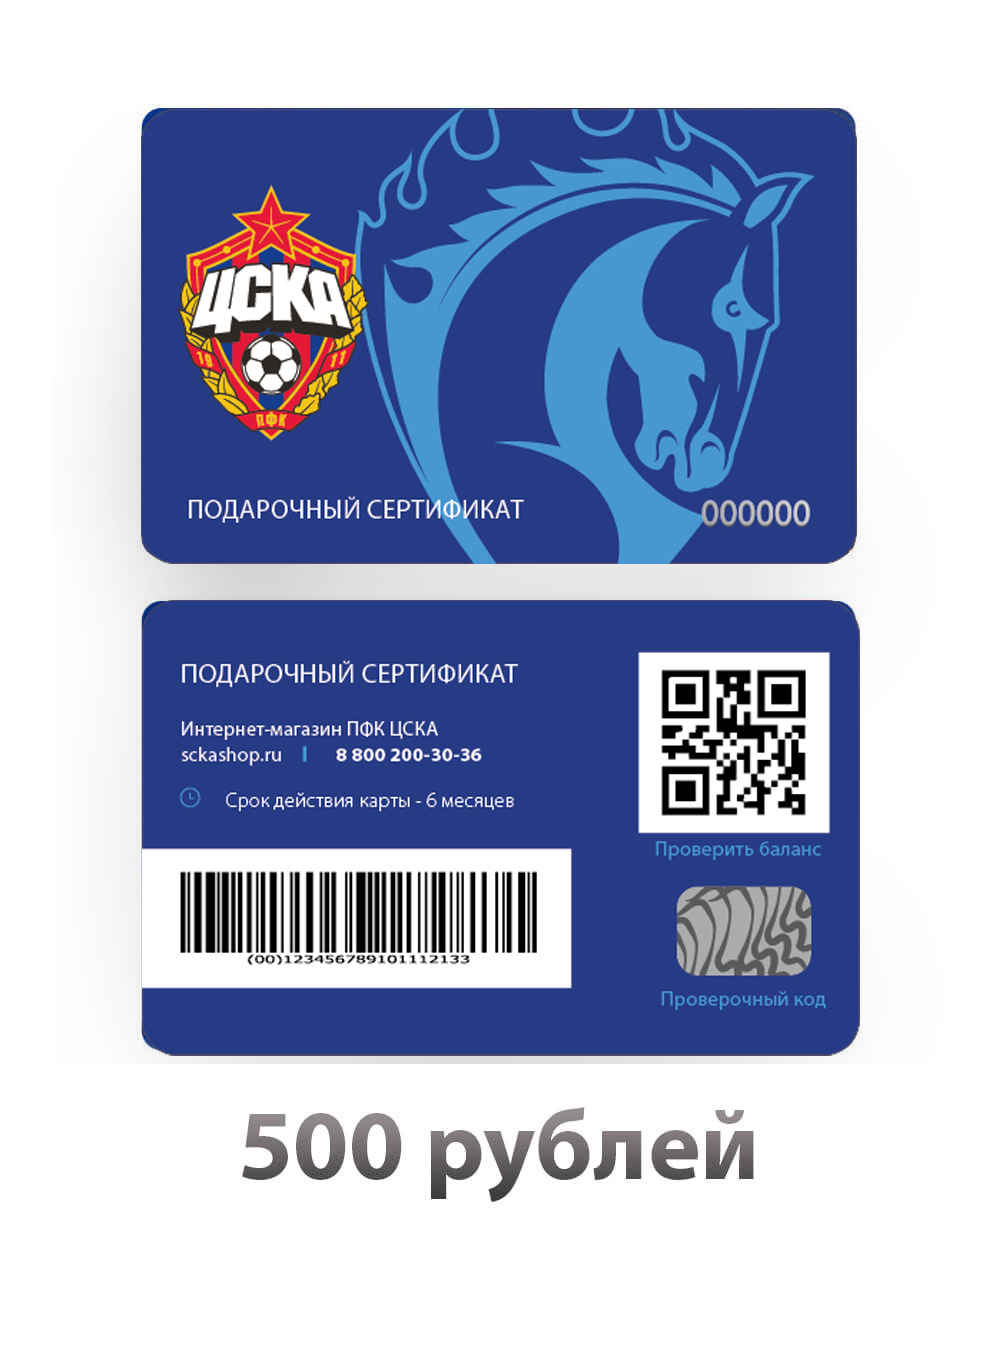 Подарочный сертификат на 500 рублей (Электронный сертификат на 500 рублей) от Cskashop